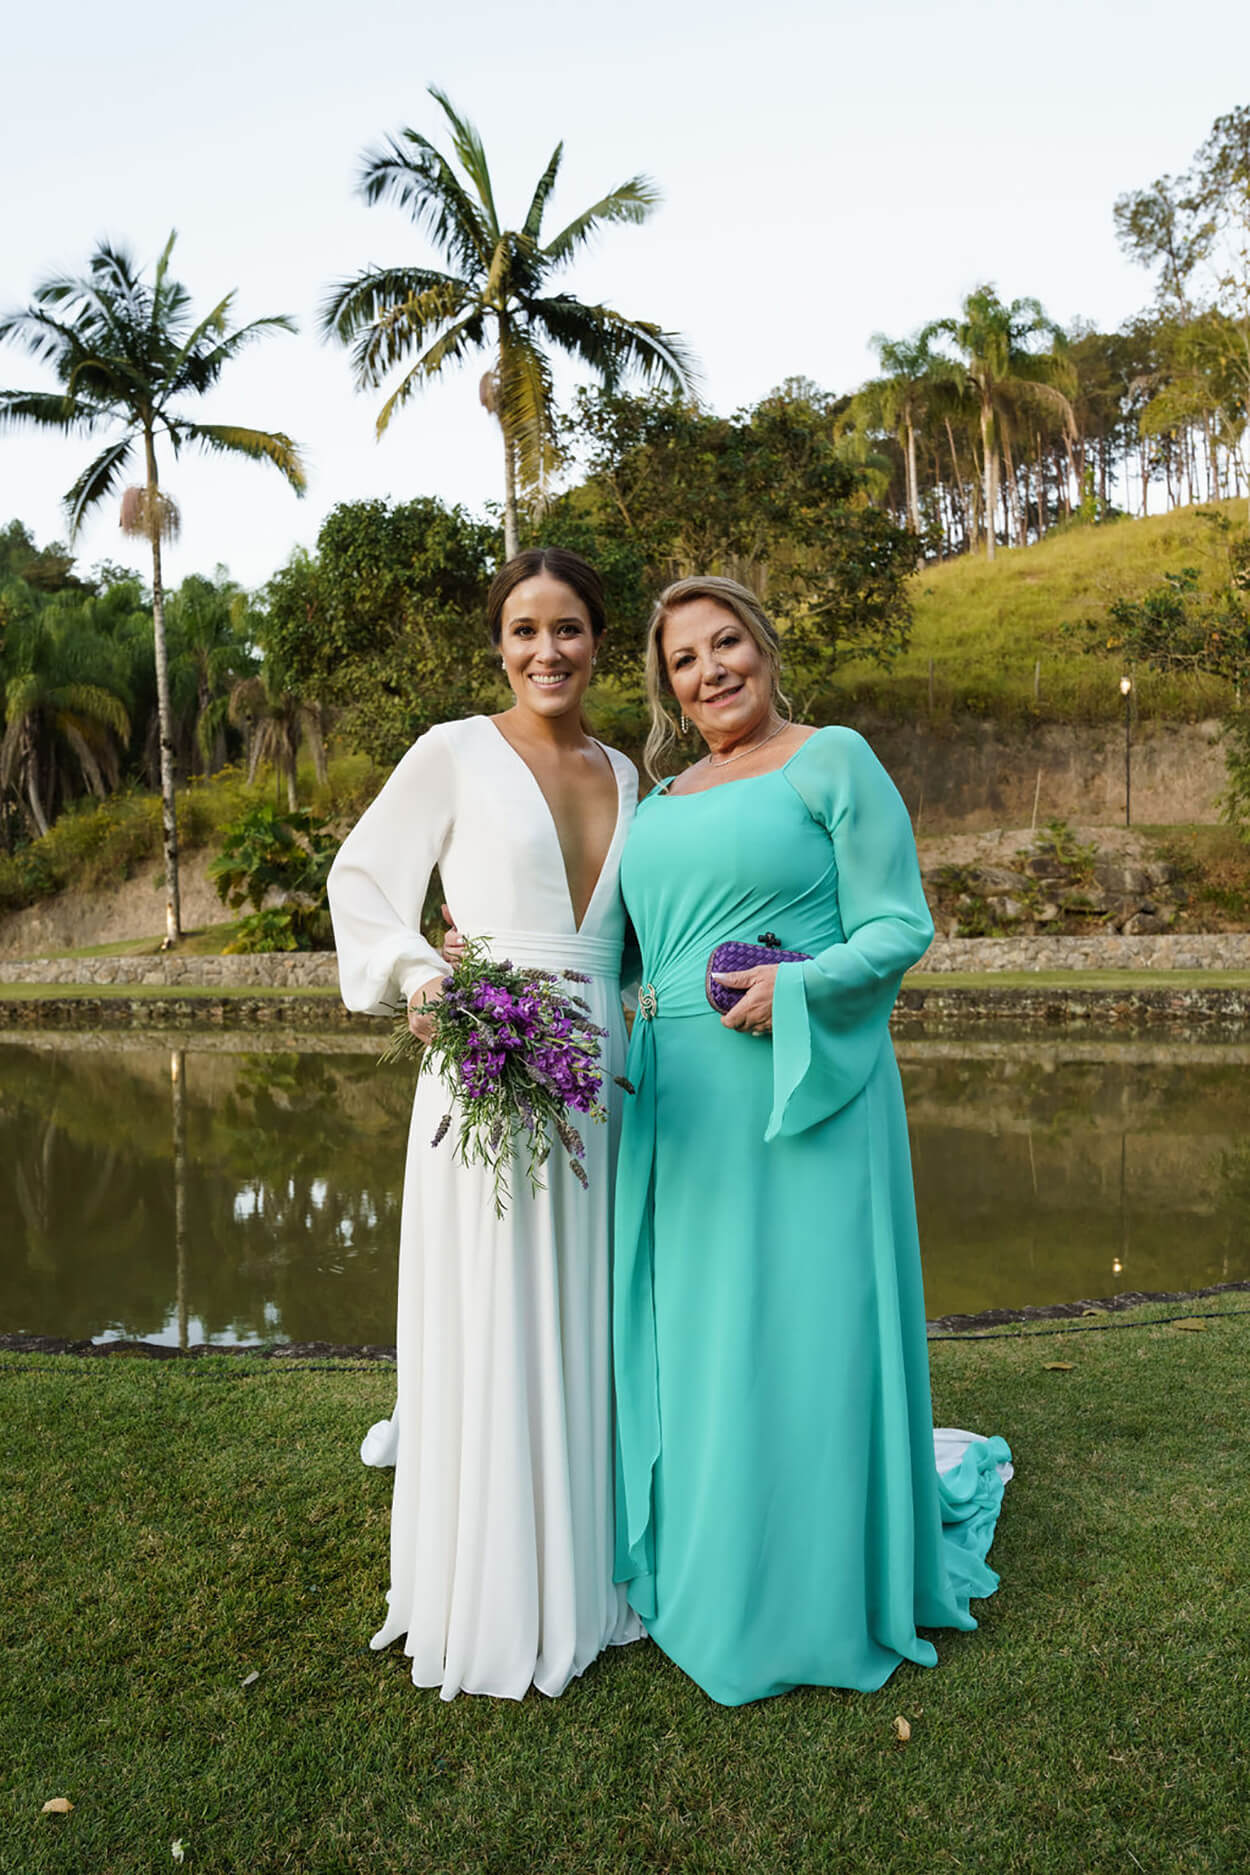 Mulher com vestido de noiva minimalist com decote em v ao lado d mãe com vetsido zul serenity